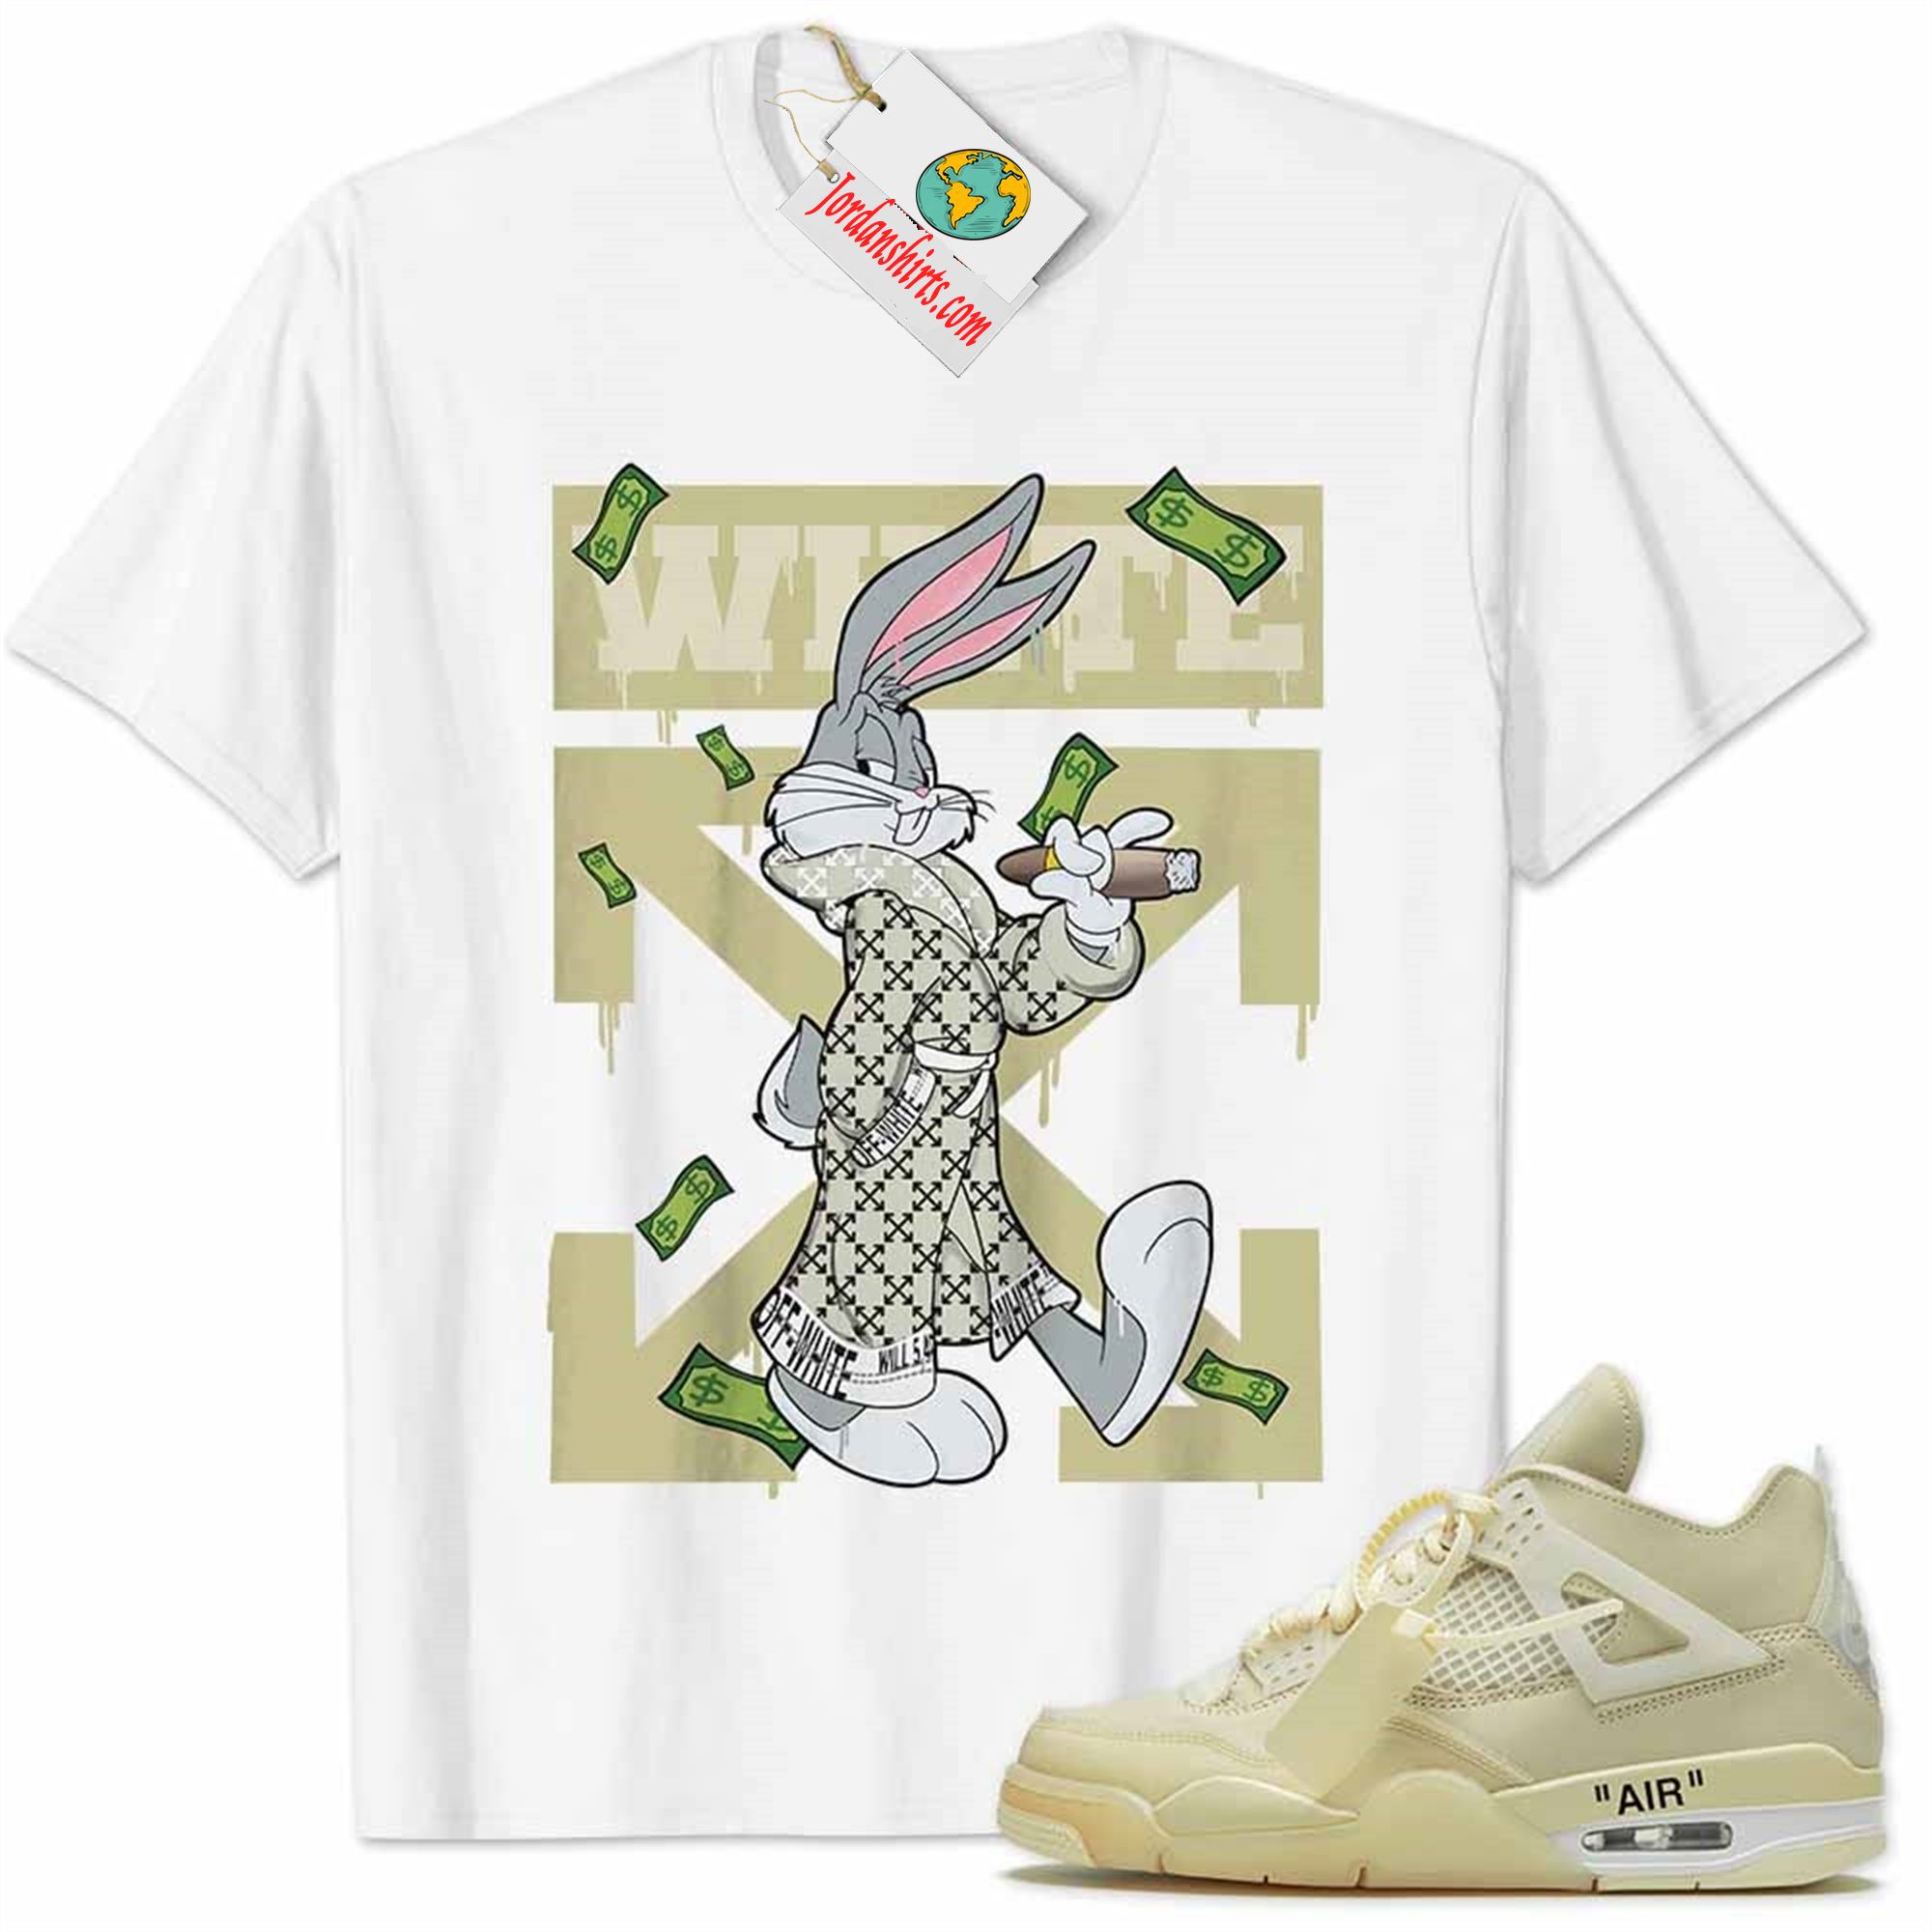 Jordan 4 Shirt, Jordan 4 Off-white Sail Shirt Bug Bunny Smokes Weed Money Falling White Plus Size Up To 5xl